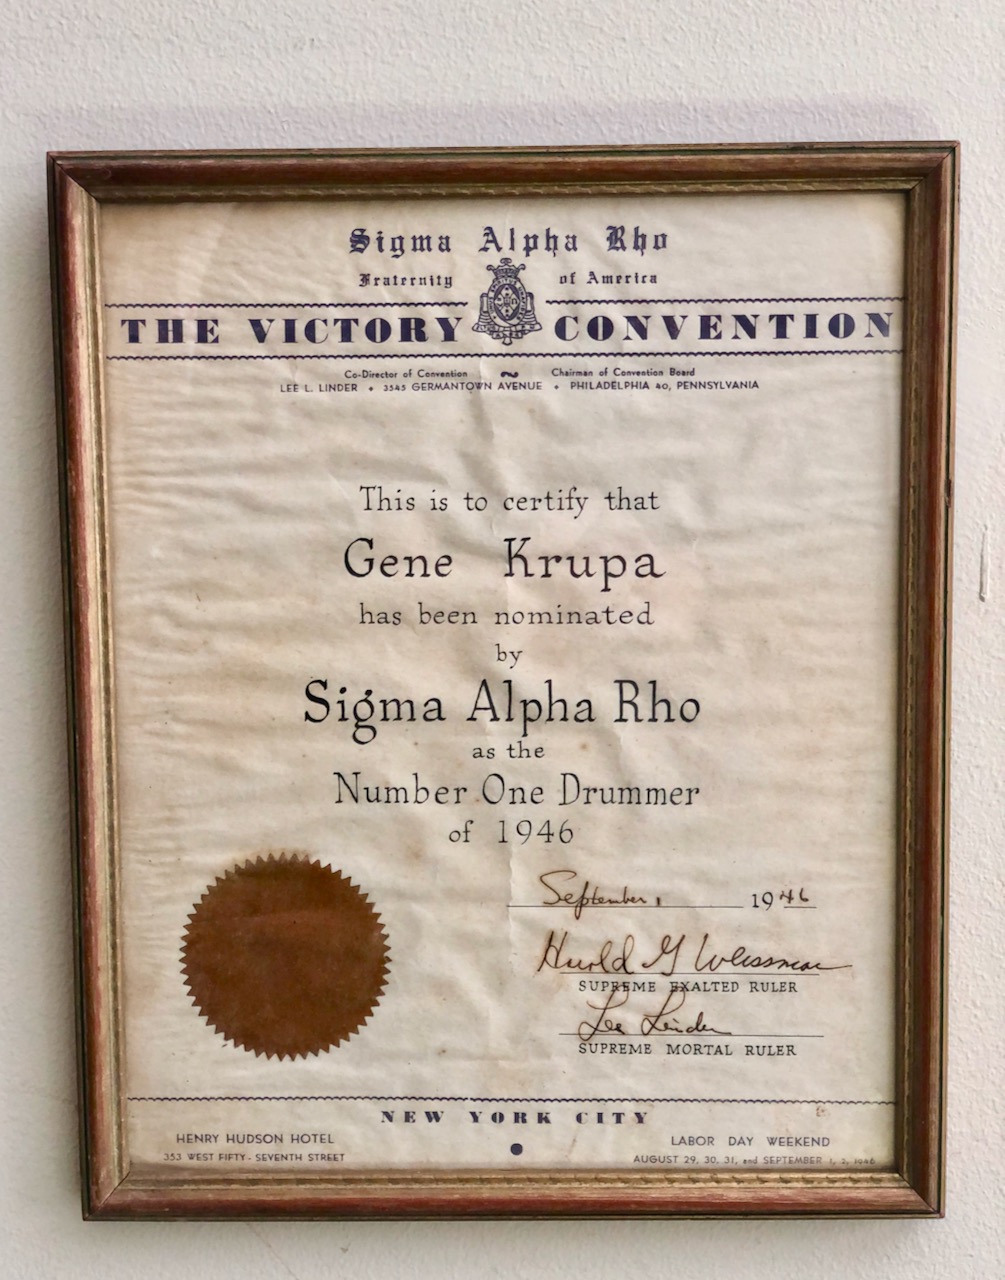 Gene Krupa's Sigma Alpha Rho Award